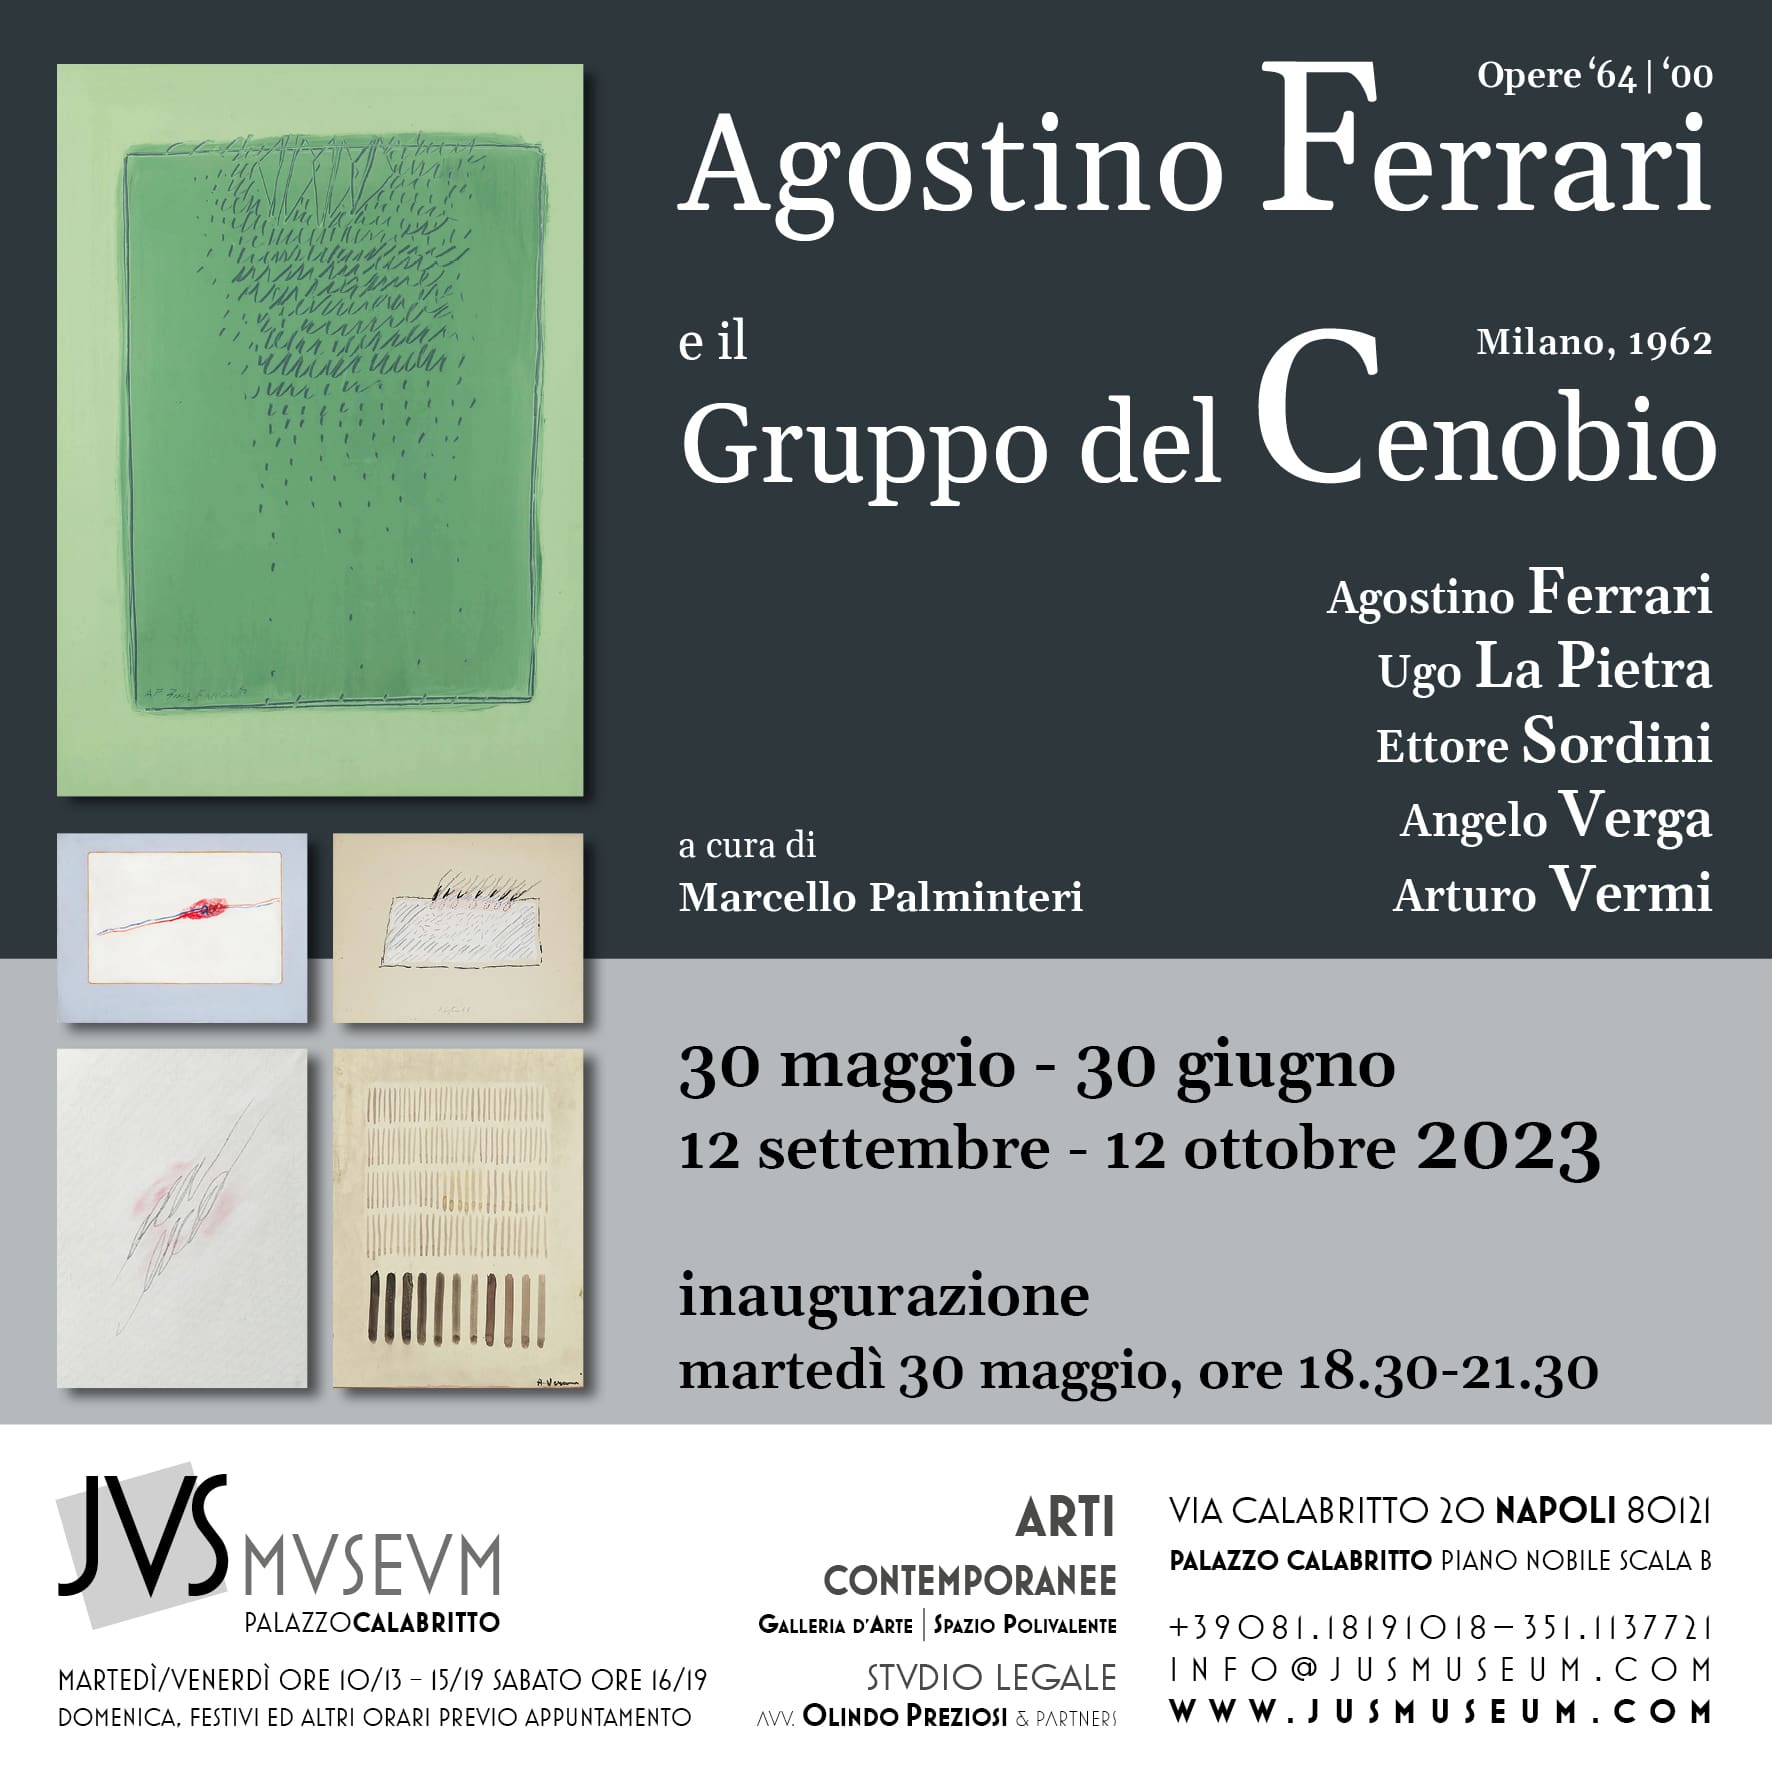 Agostino Ferrari Gruppo Cenobio - NAPOLI – Palazzo Calabritto/Jus Museum - A cura di Marcello Palminteri - 30/05/2023 - 30/06/2023